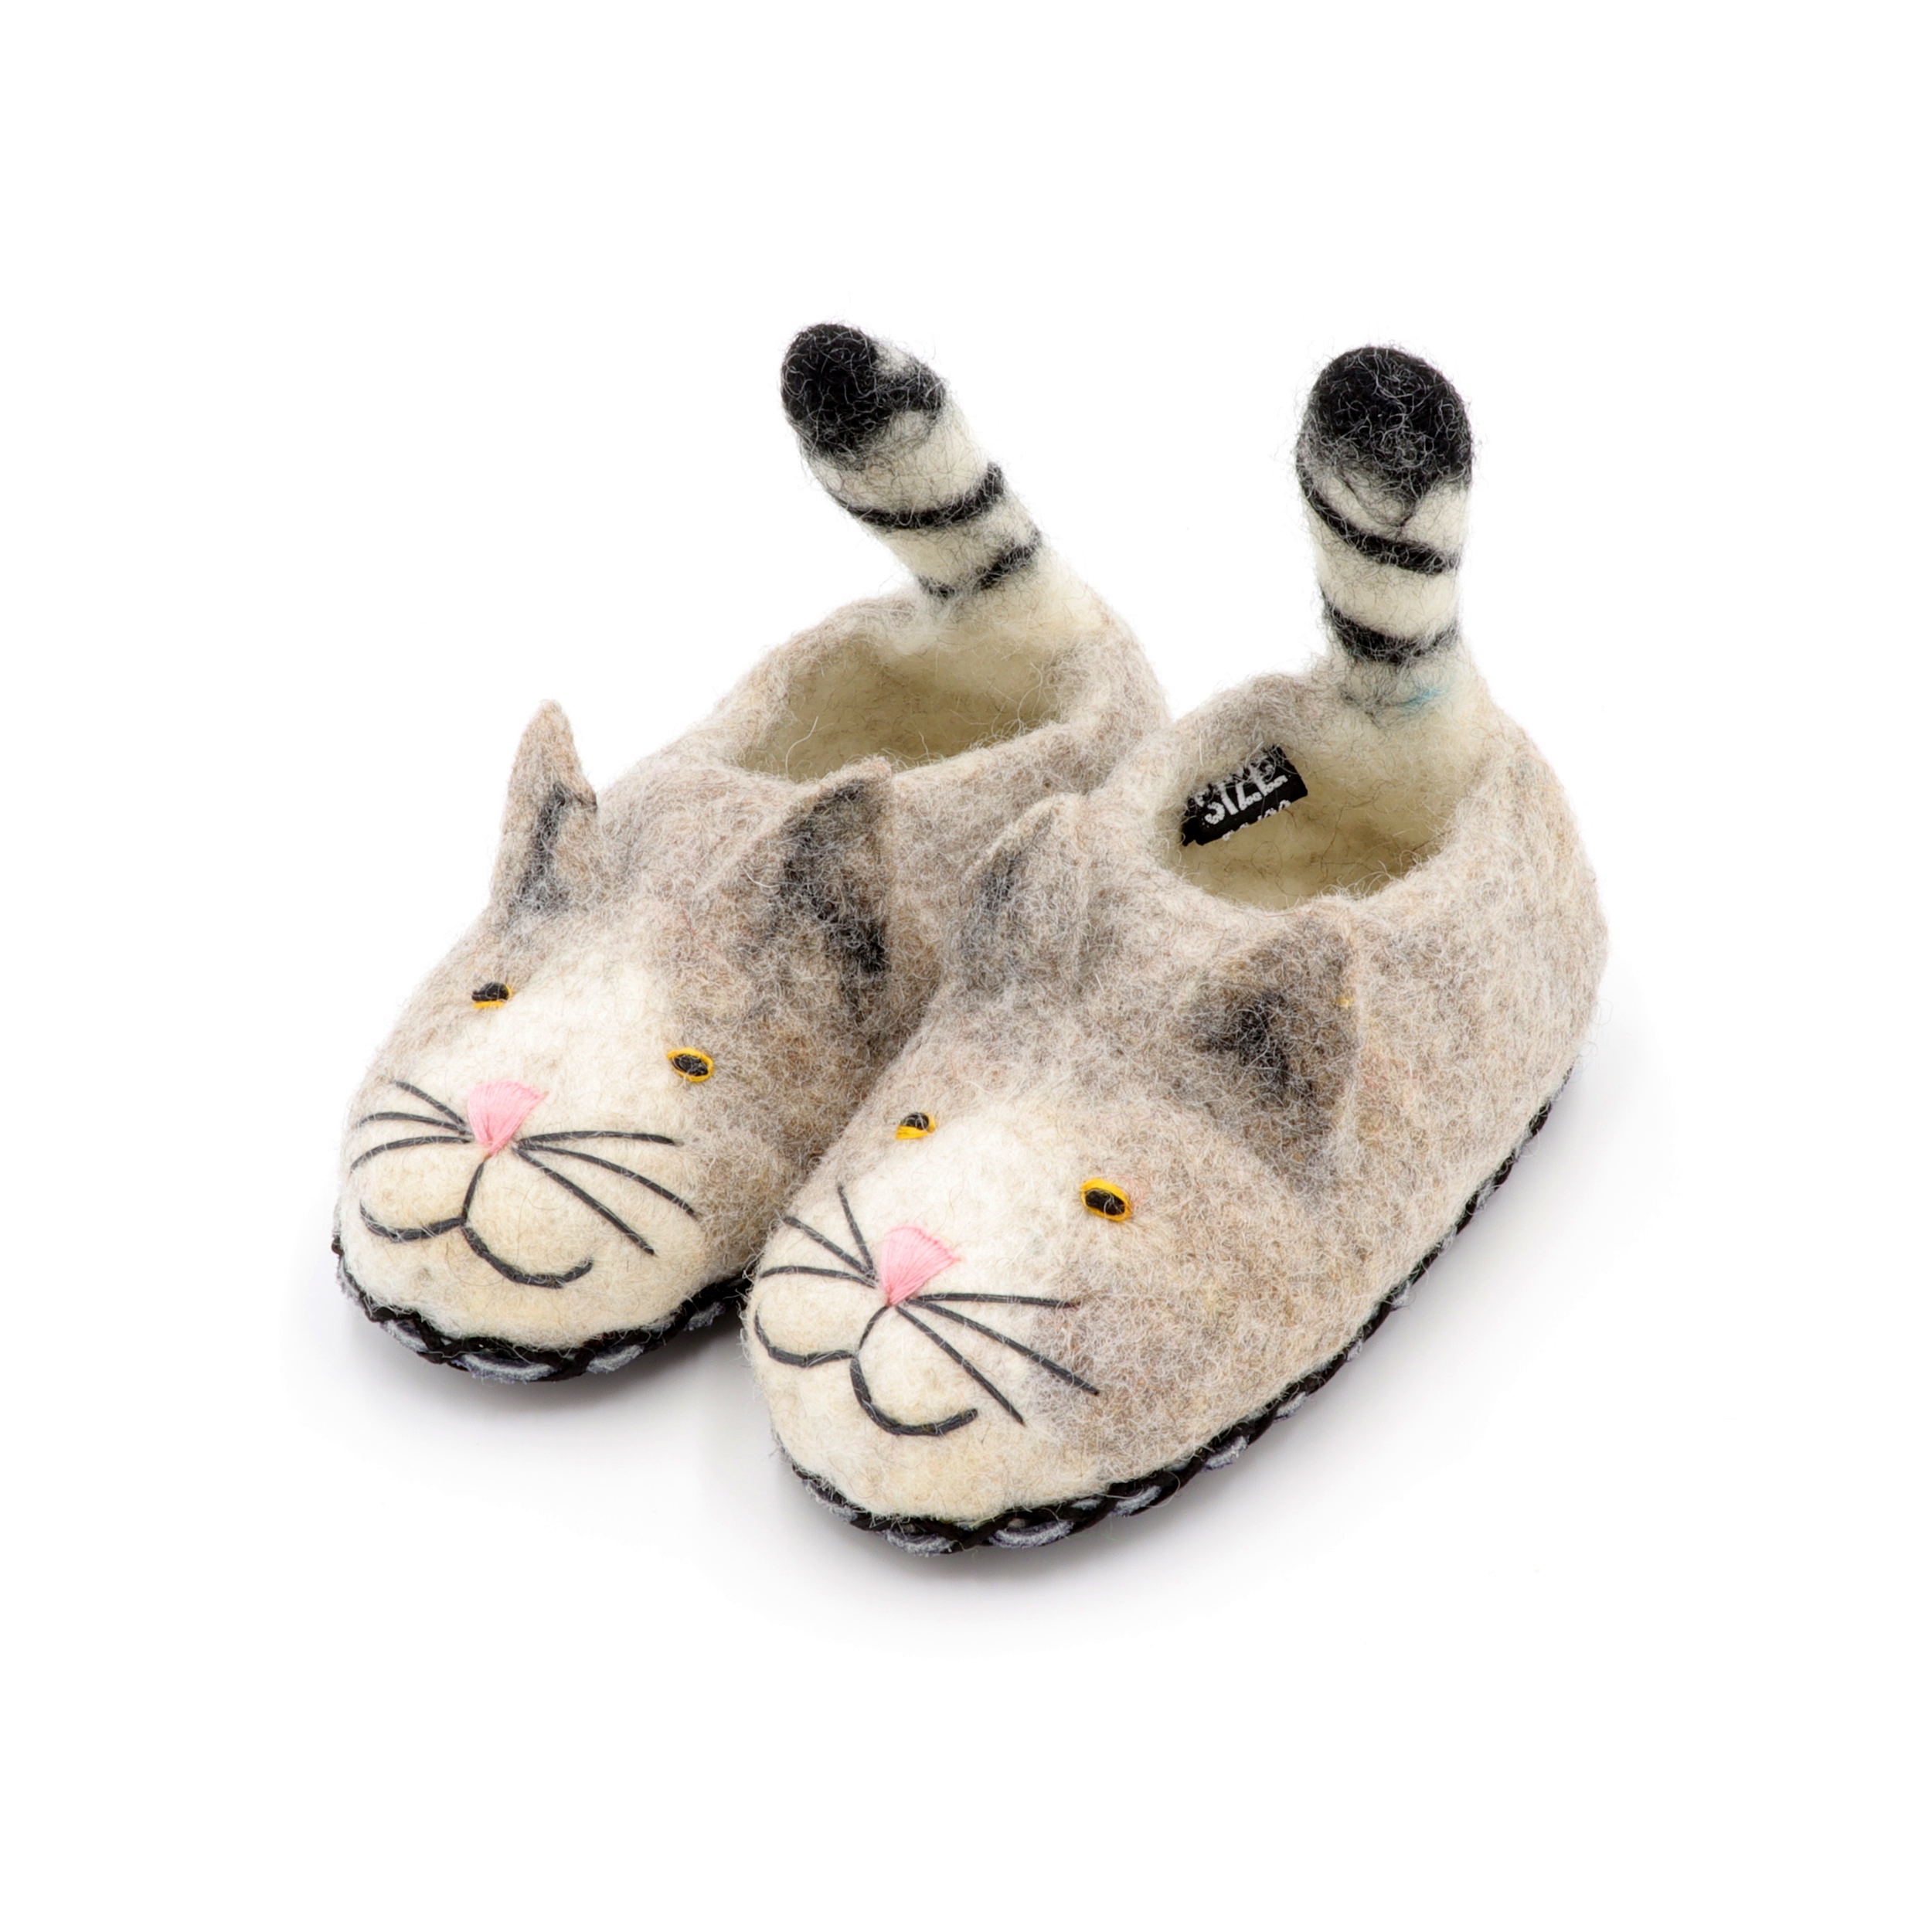 Schuhe aus Filz für Kinder - Die Graue Katze - rutschfeste Sohle aus Wildleder